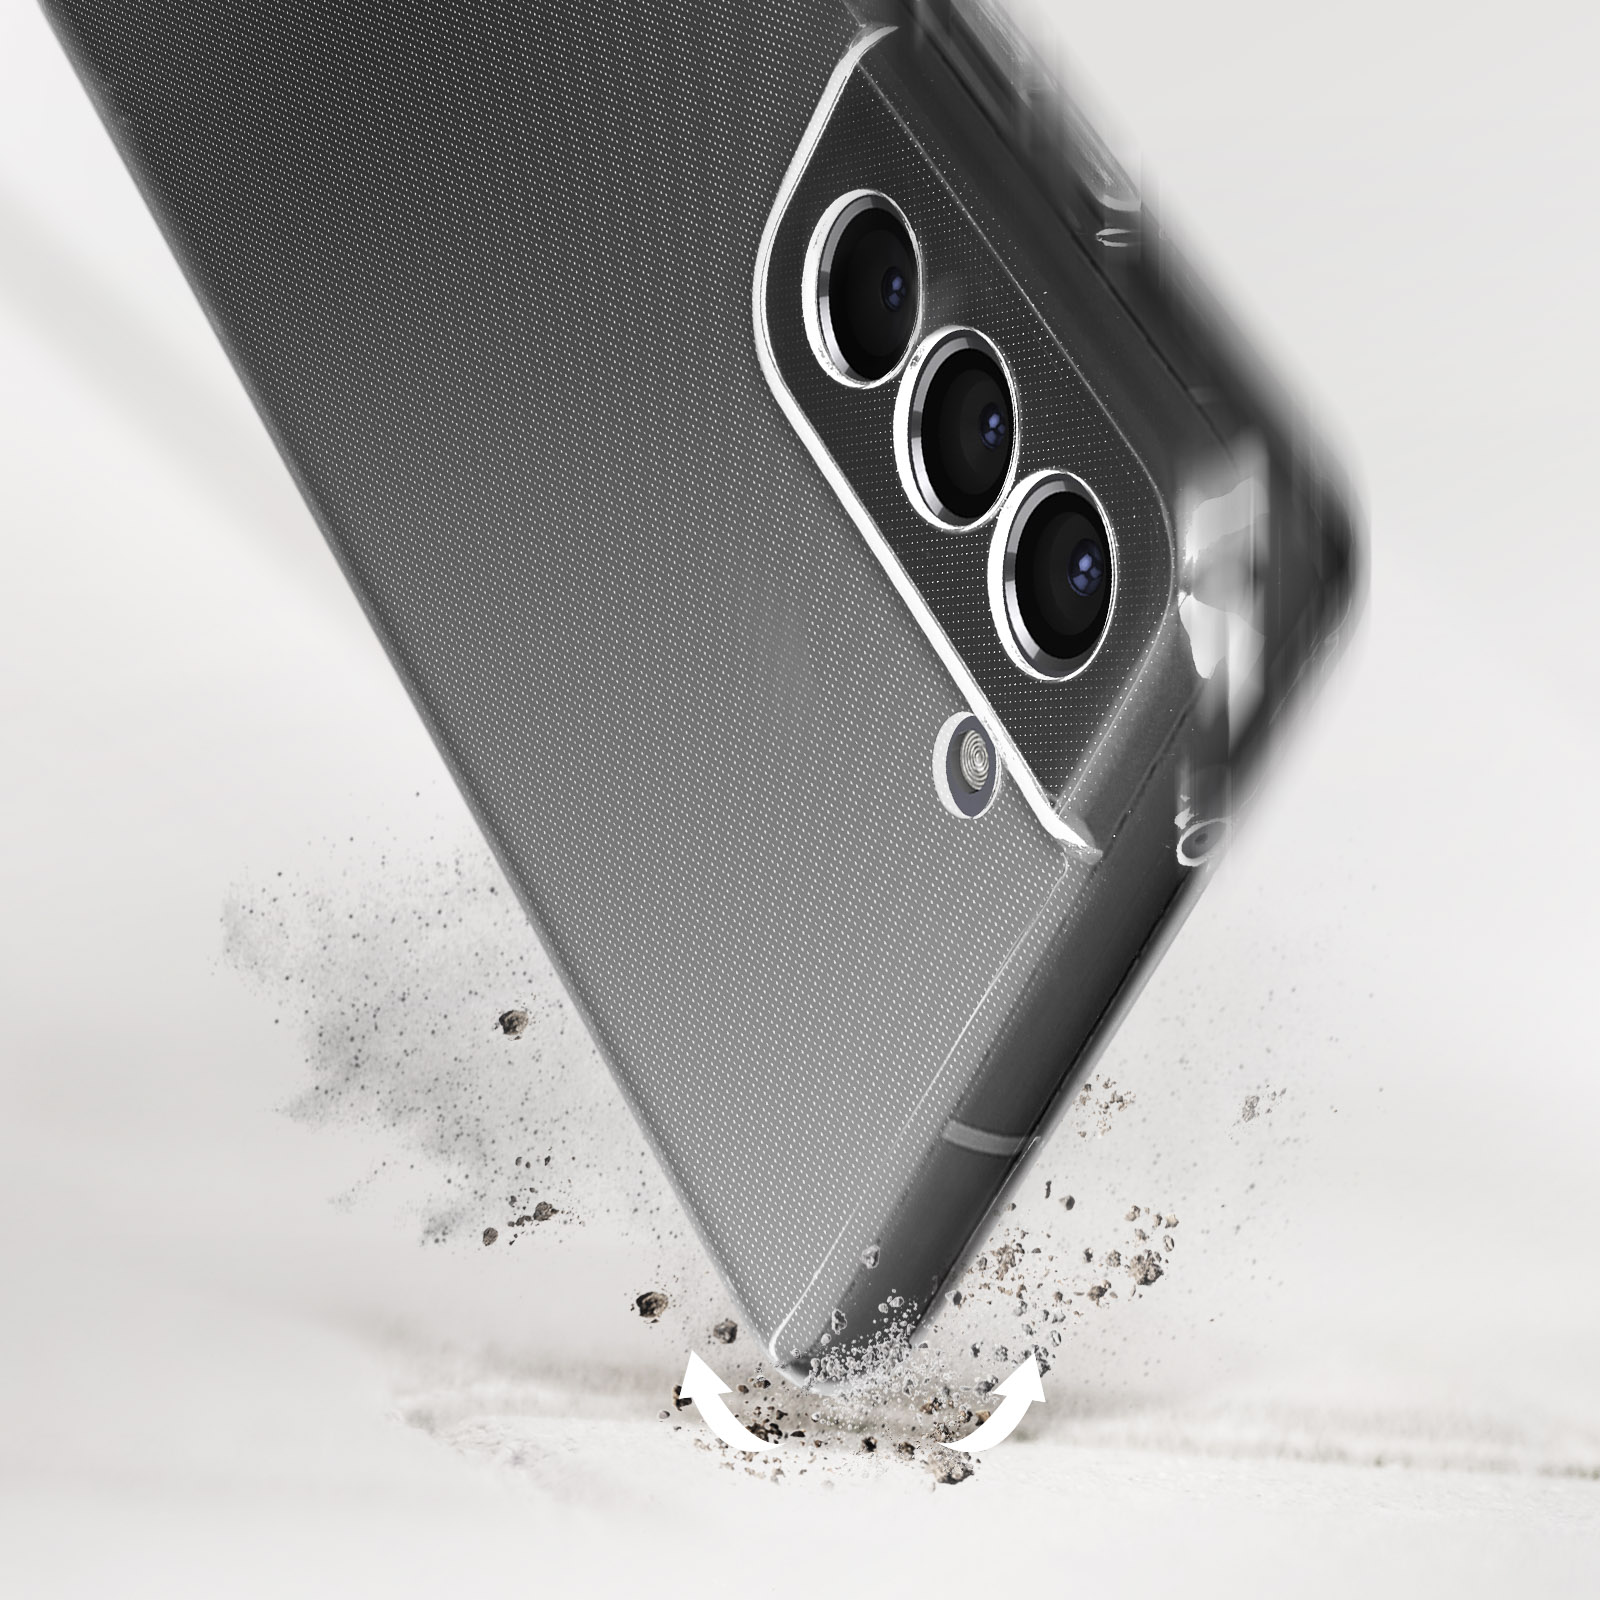 Coque Samsung S21 Ultra Flexible Noire + Verre Trempé Transparent